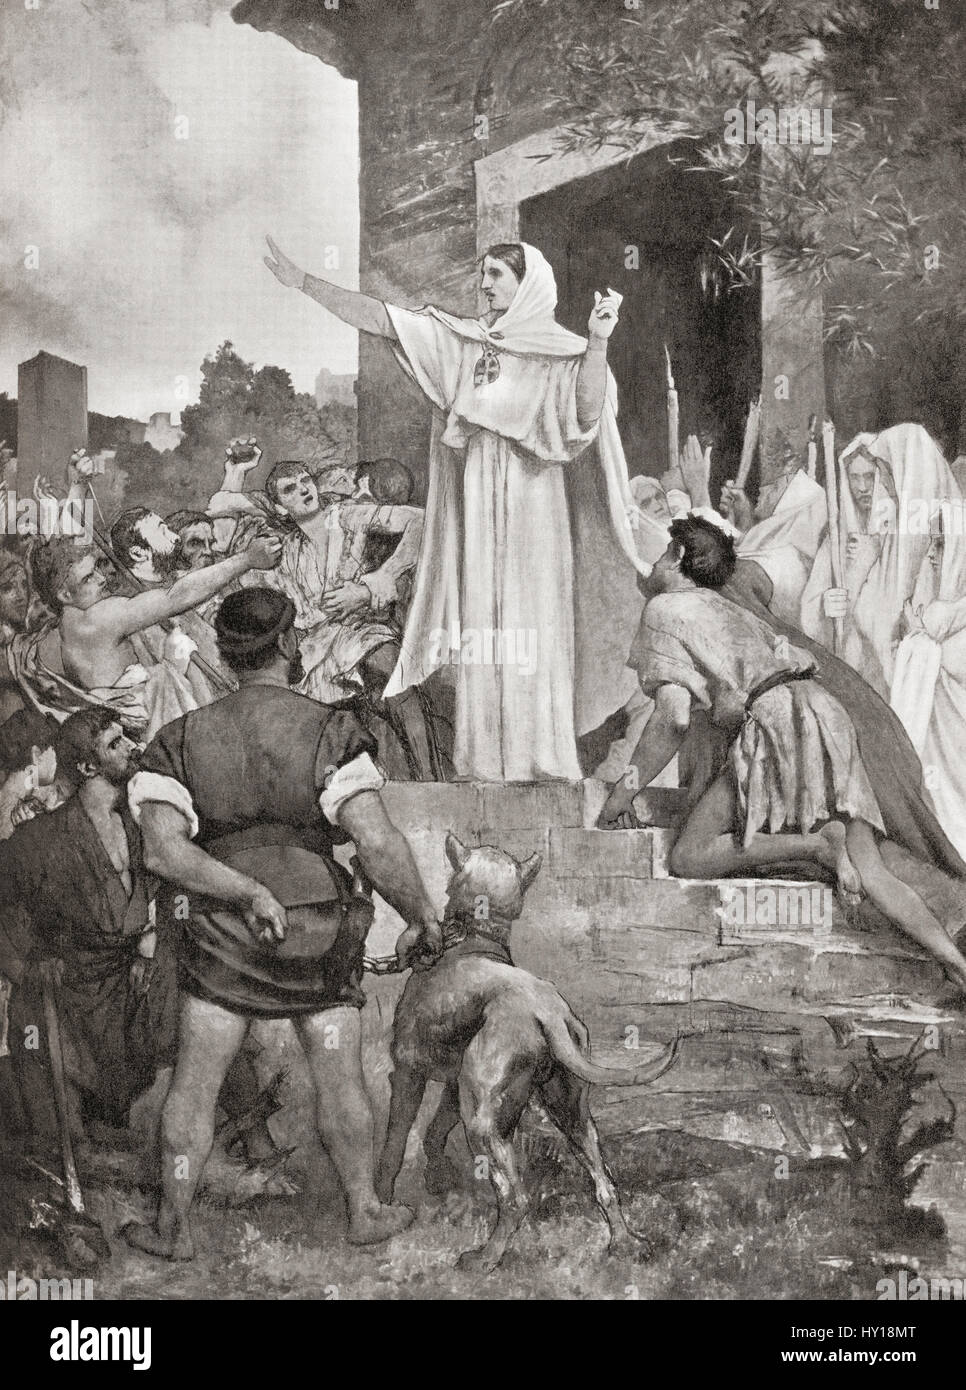 Saint Genevieve calmer les parisiens sur l'approche d'Attila le Hun, 451MA. L'histoire de Hutchinson de l'ONU, publié en 1915. Banque D'Images